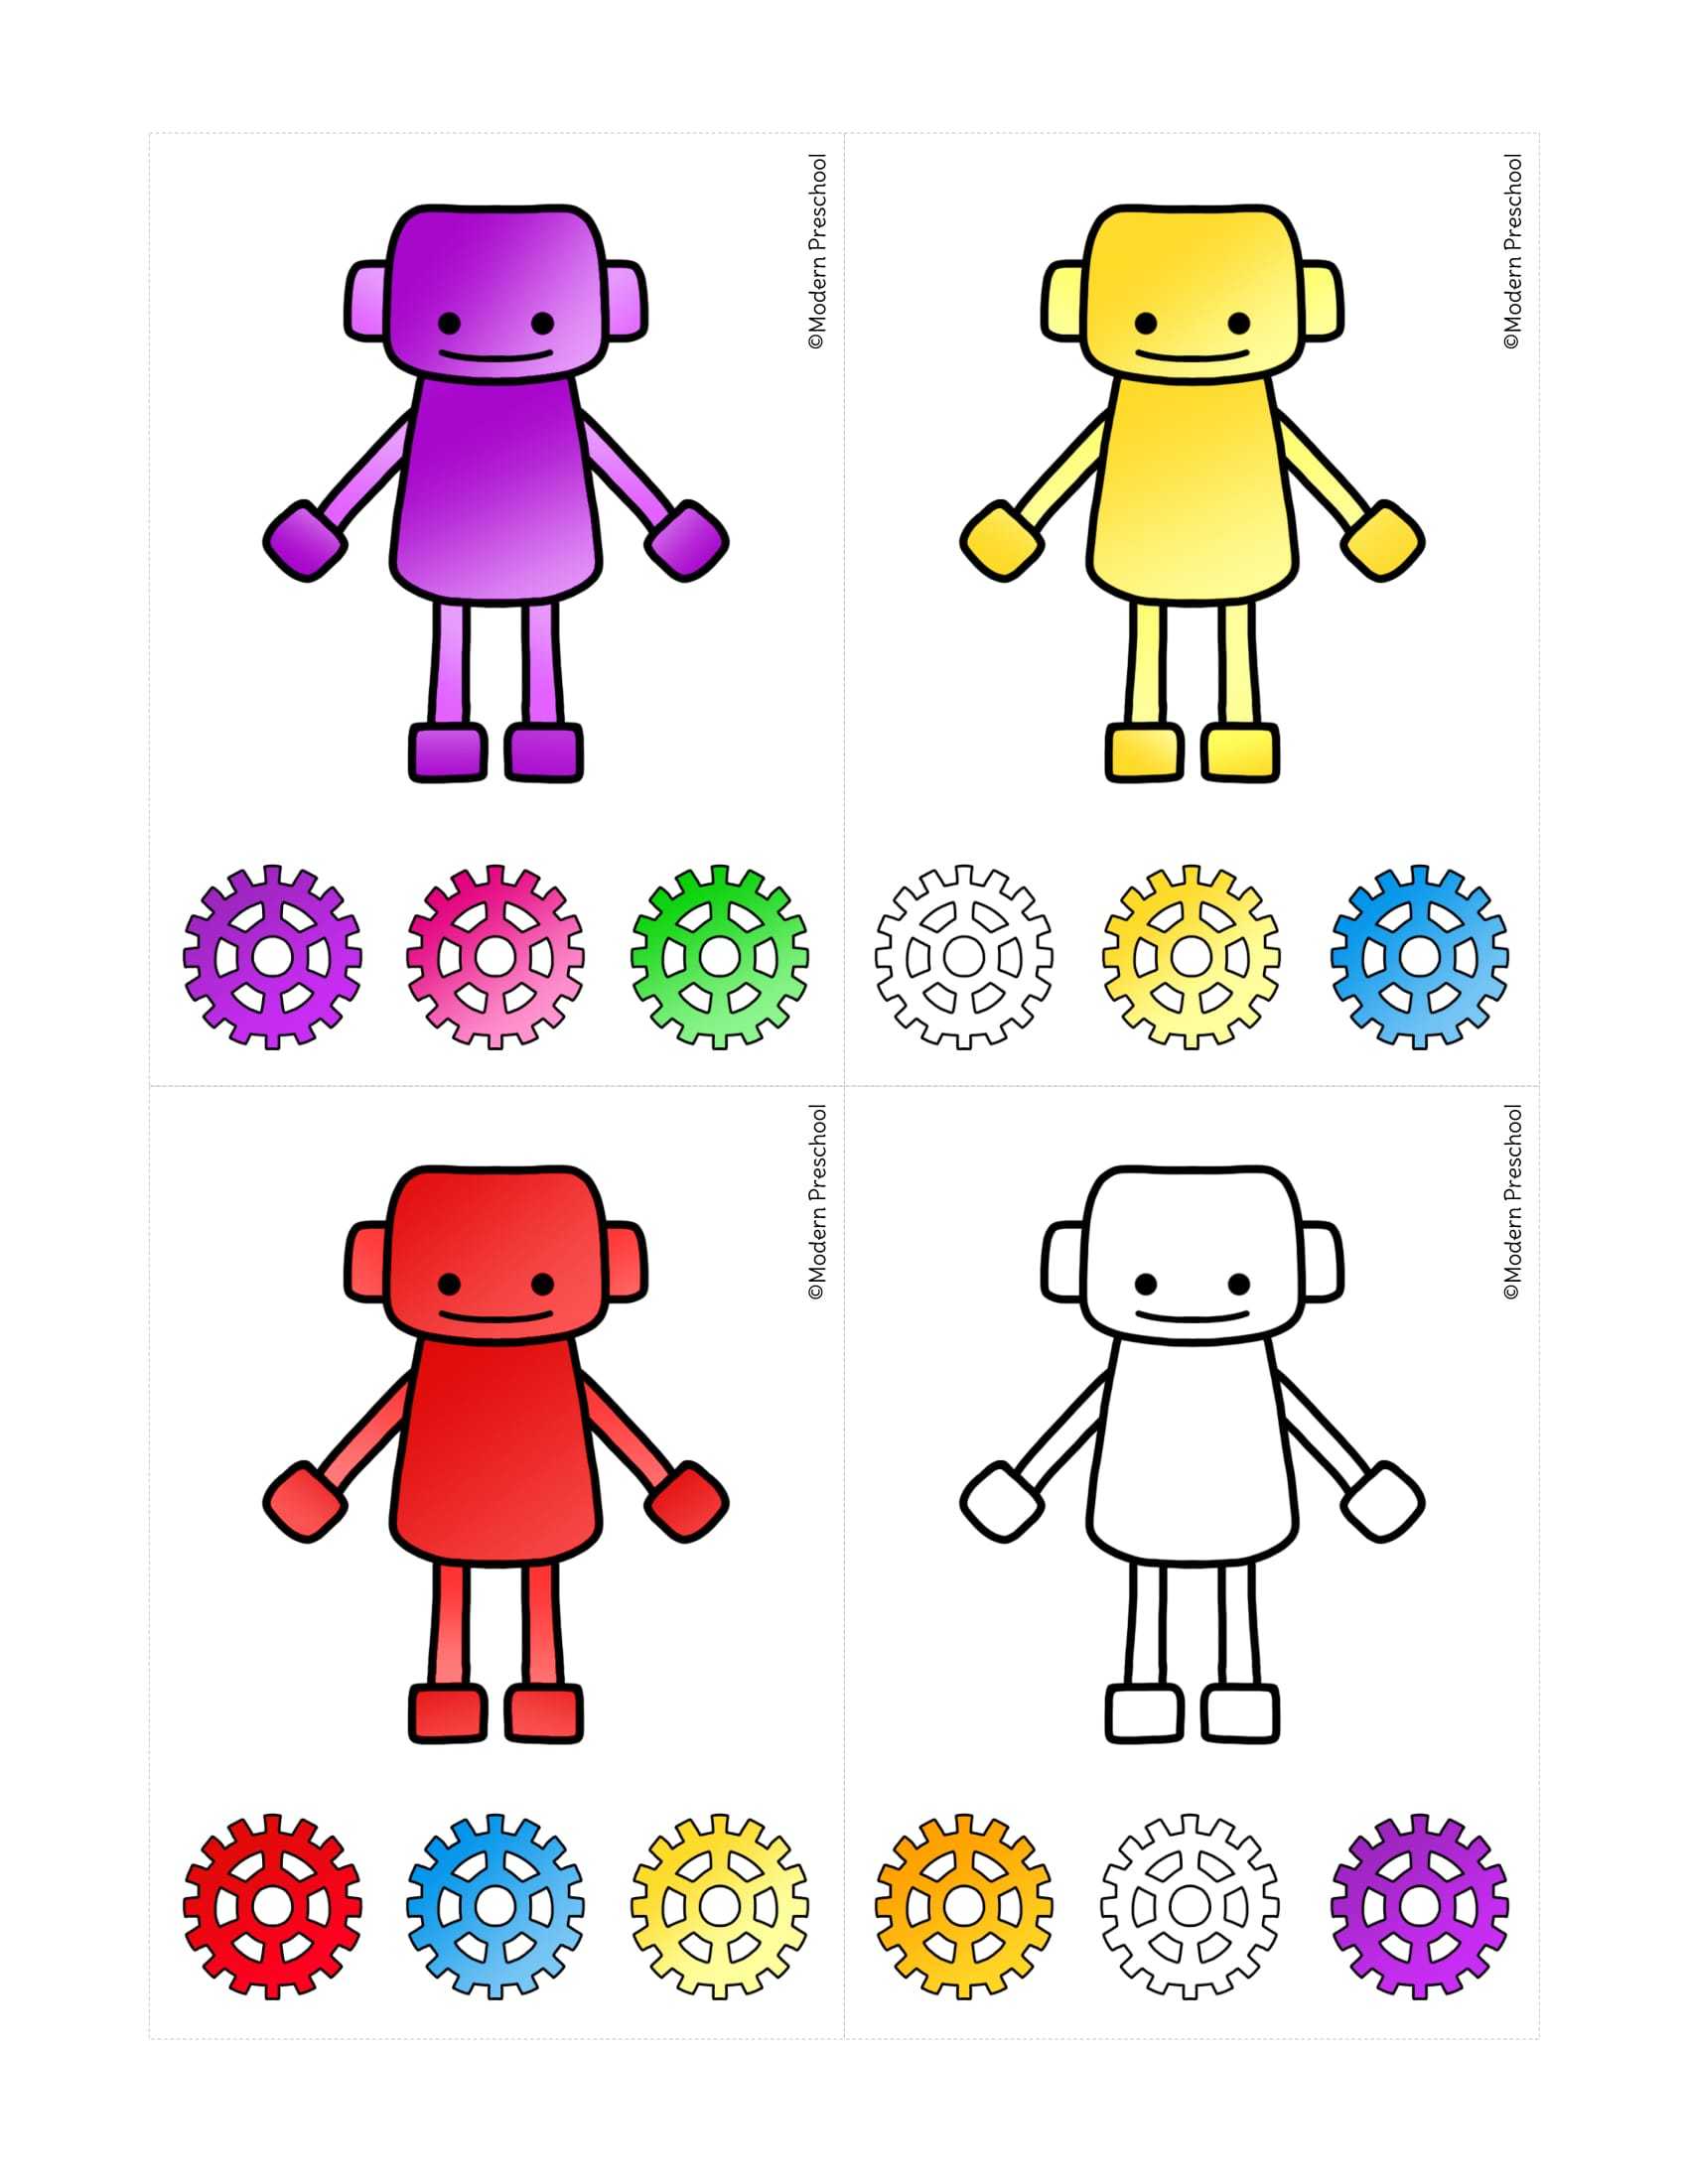 okul oncesi renk kavrami egitici oyuncak yapimi (2)